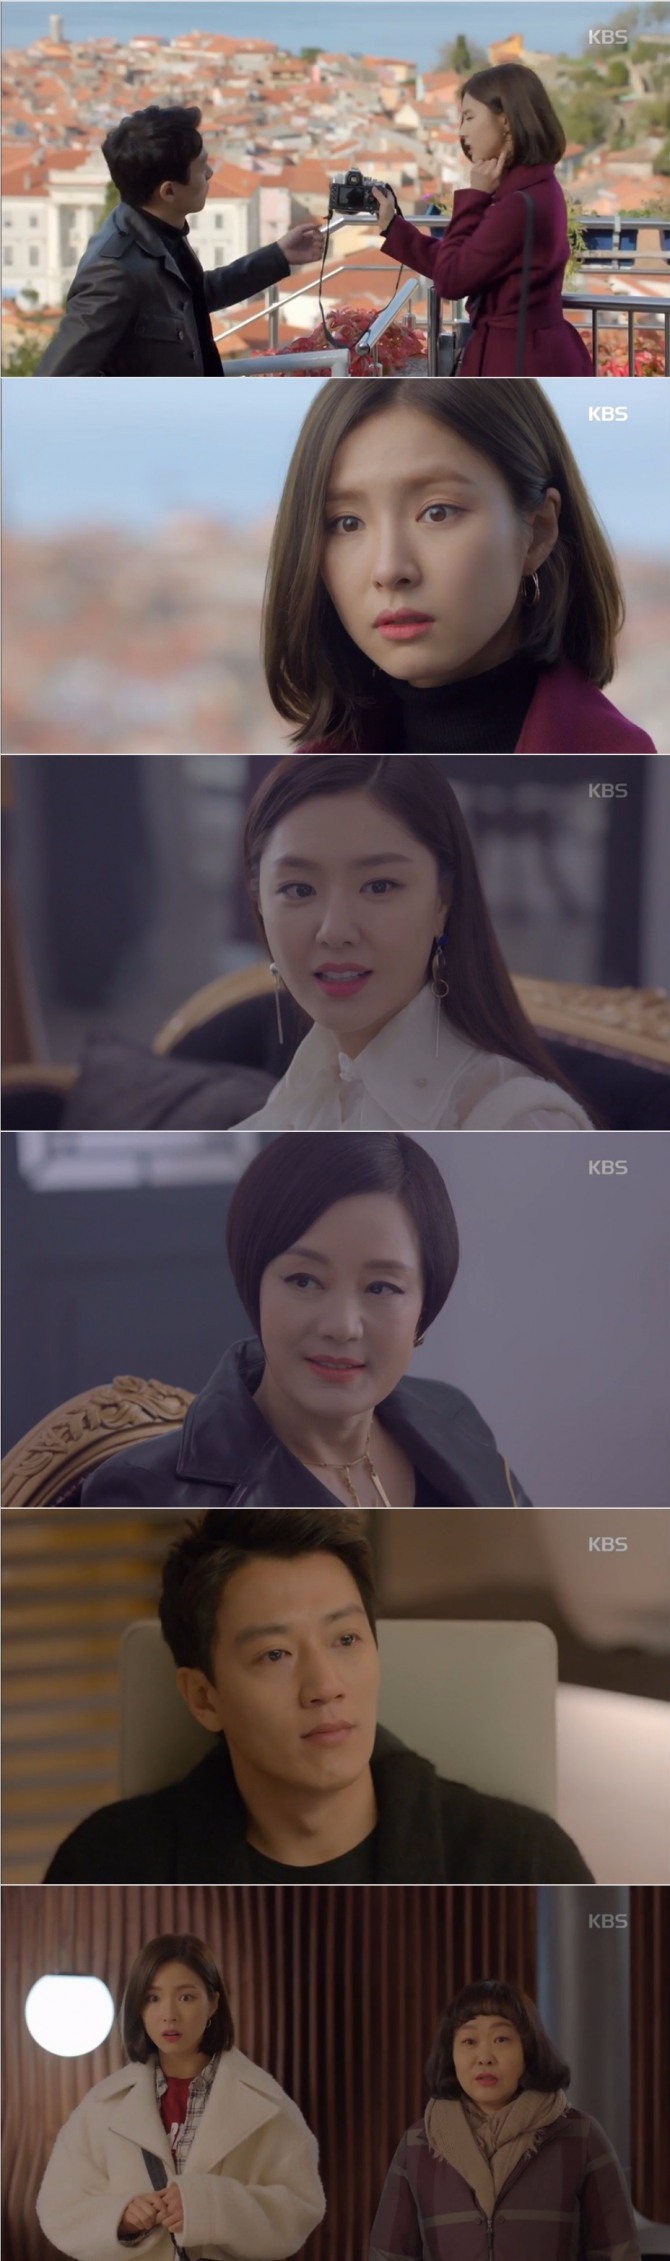 7일 밤 방송된 KBS2 수목드라마 '흑기사'에서는 문수호(김래원)가 첫사랑인 해라(신세경)에게 게스트하우스를 제공하며 한집살이를 추진하는 파격적인 전개가 그려졌다. 사진=KBS 방송 캡처